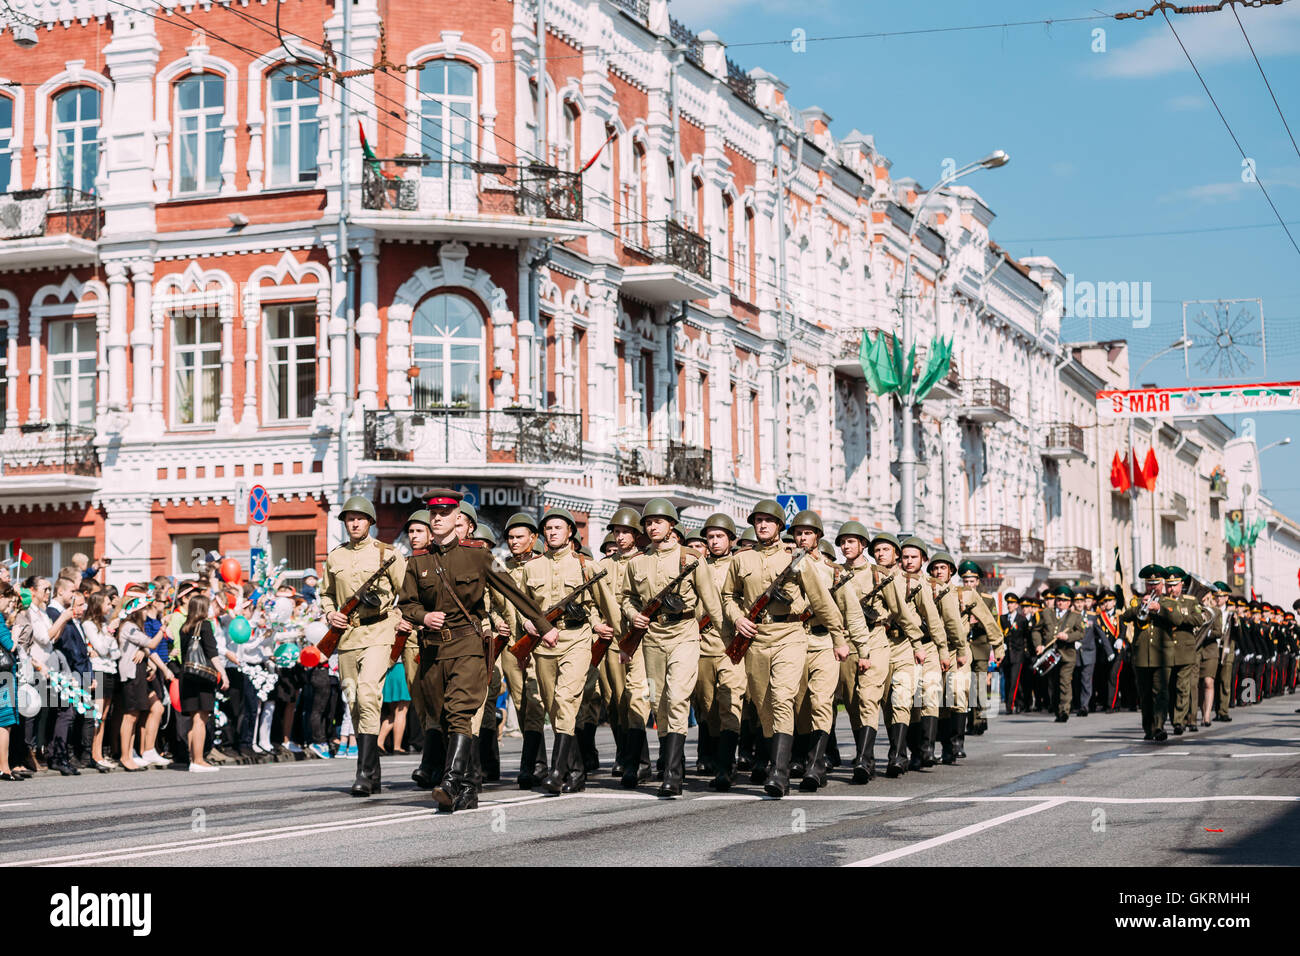 Marschieren bewaffneten Soldaten Formation mit dem Offizier im Kopf, als russischen sowjetischen Soldaten des zweiten Weltkriegs Zeit gekleidet. Feierliche Parade P Stockfoto